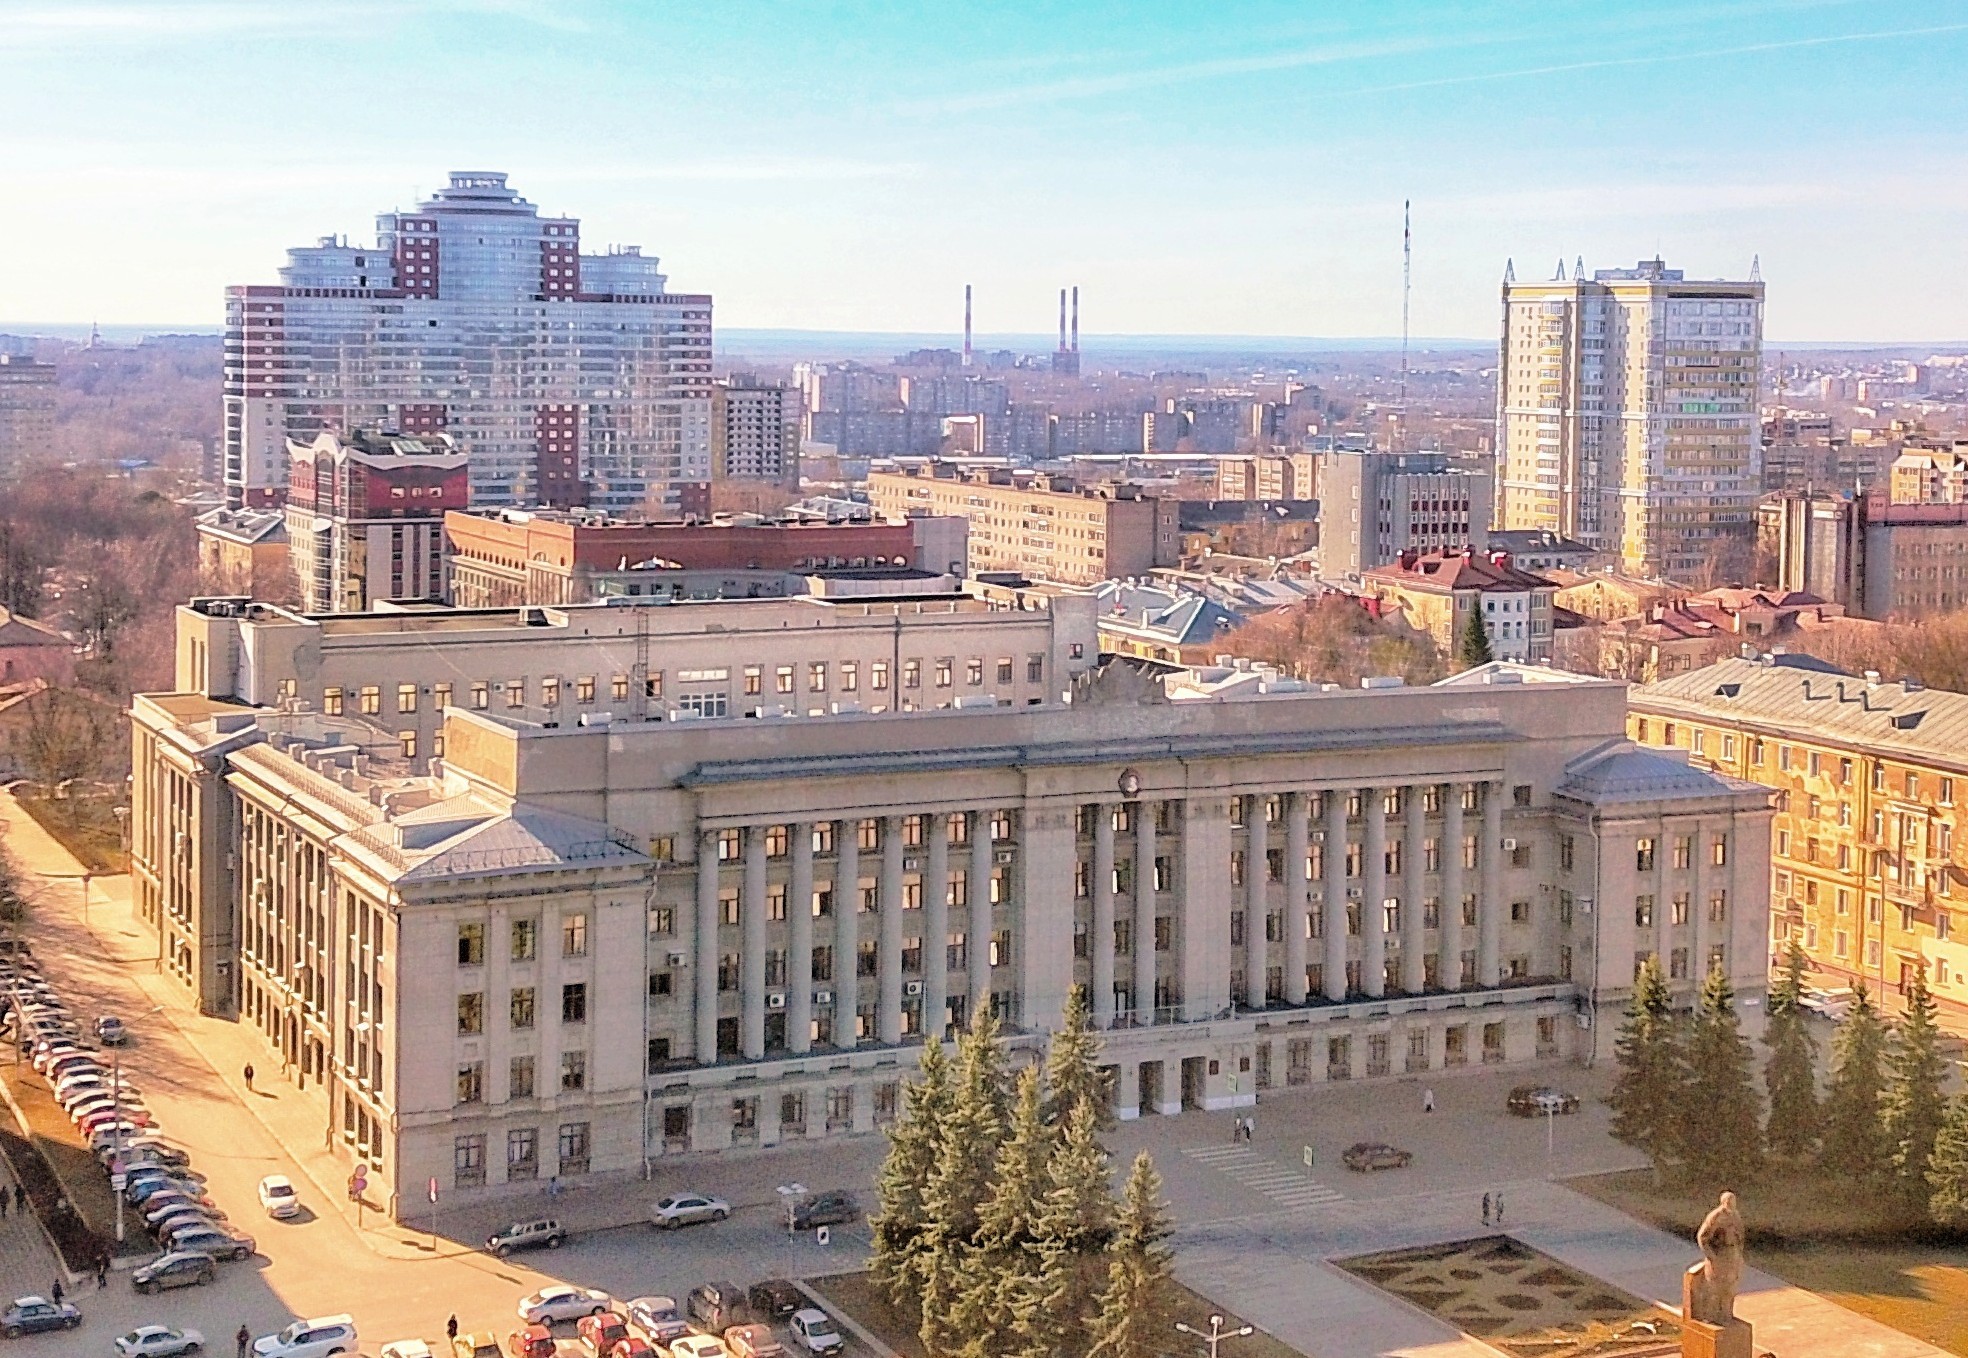 Здание правительства Кировской области